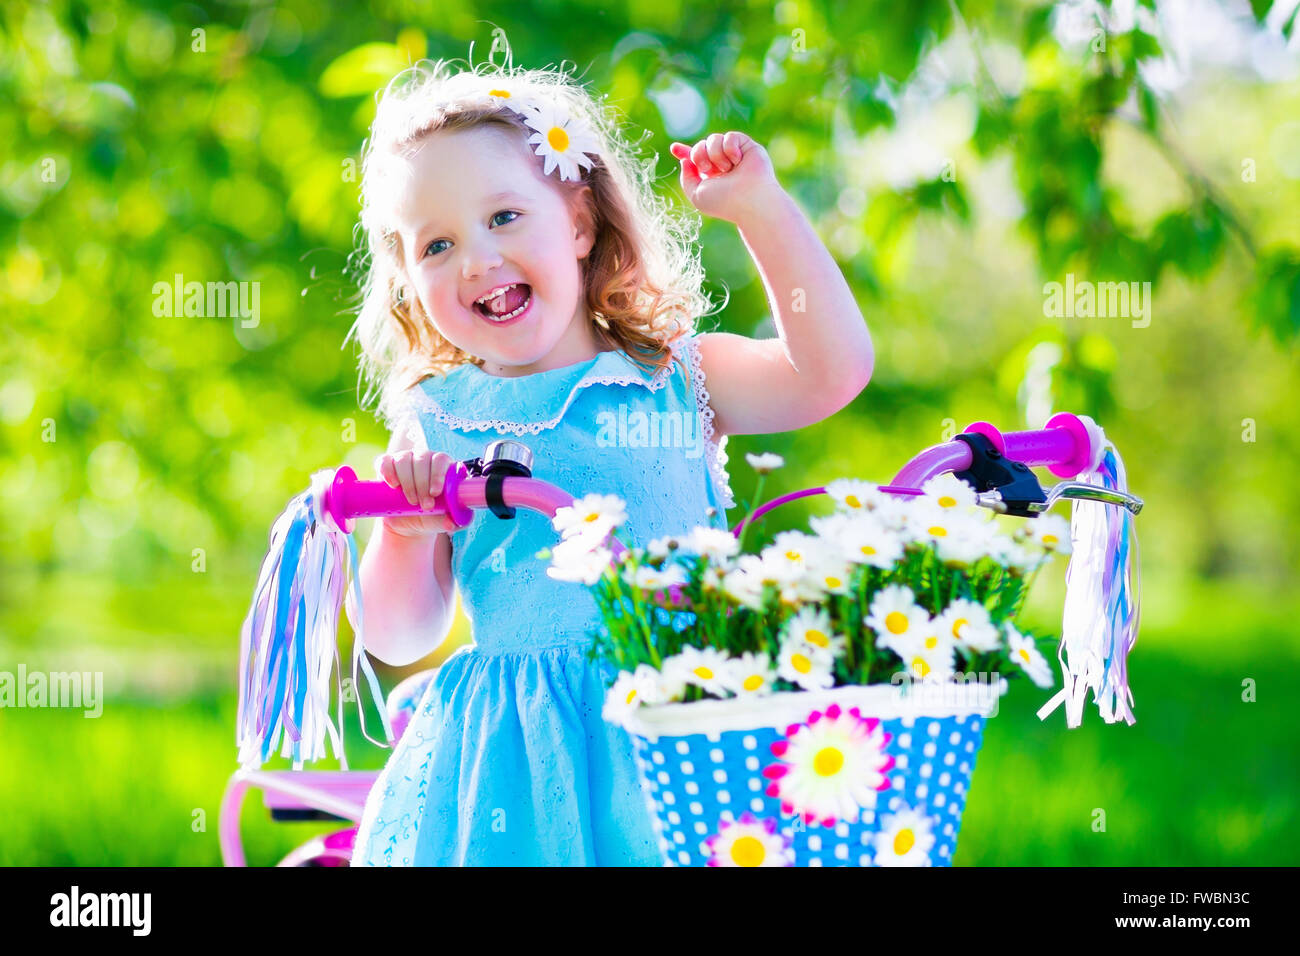 Glückliches Kind mit dem Fahrrad. Süßes Kind Radfahren im Freien. Kleines Mädchen in einem blauen Kleid auf einem rosa Fahrrad mit Daisy Blumen im Korb Stockfoto